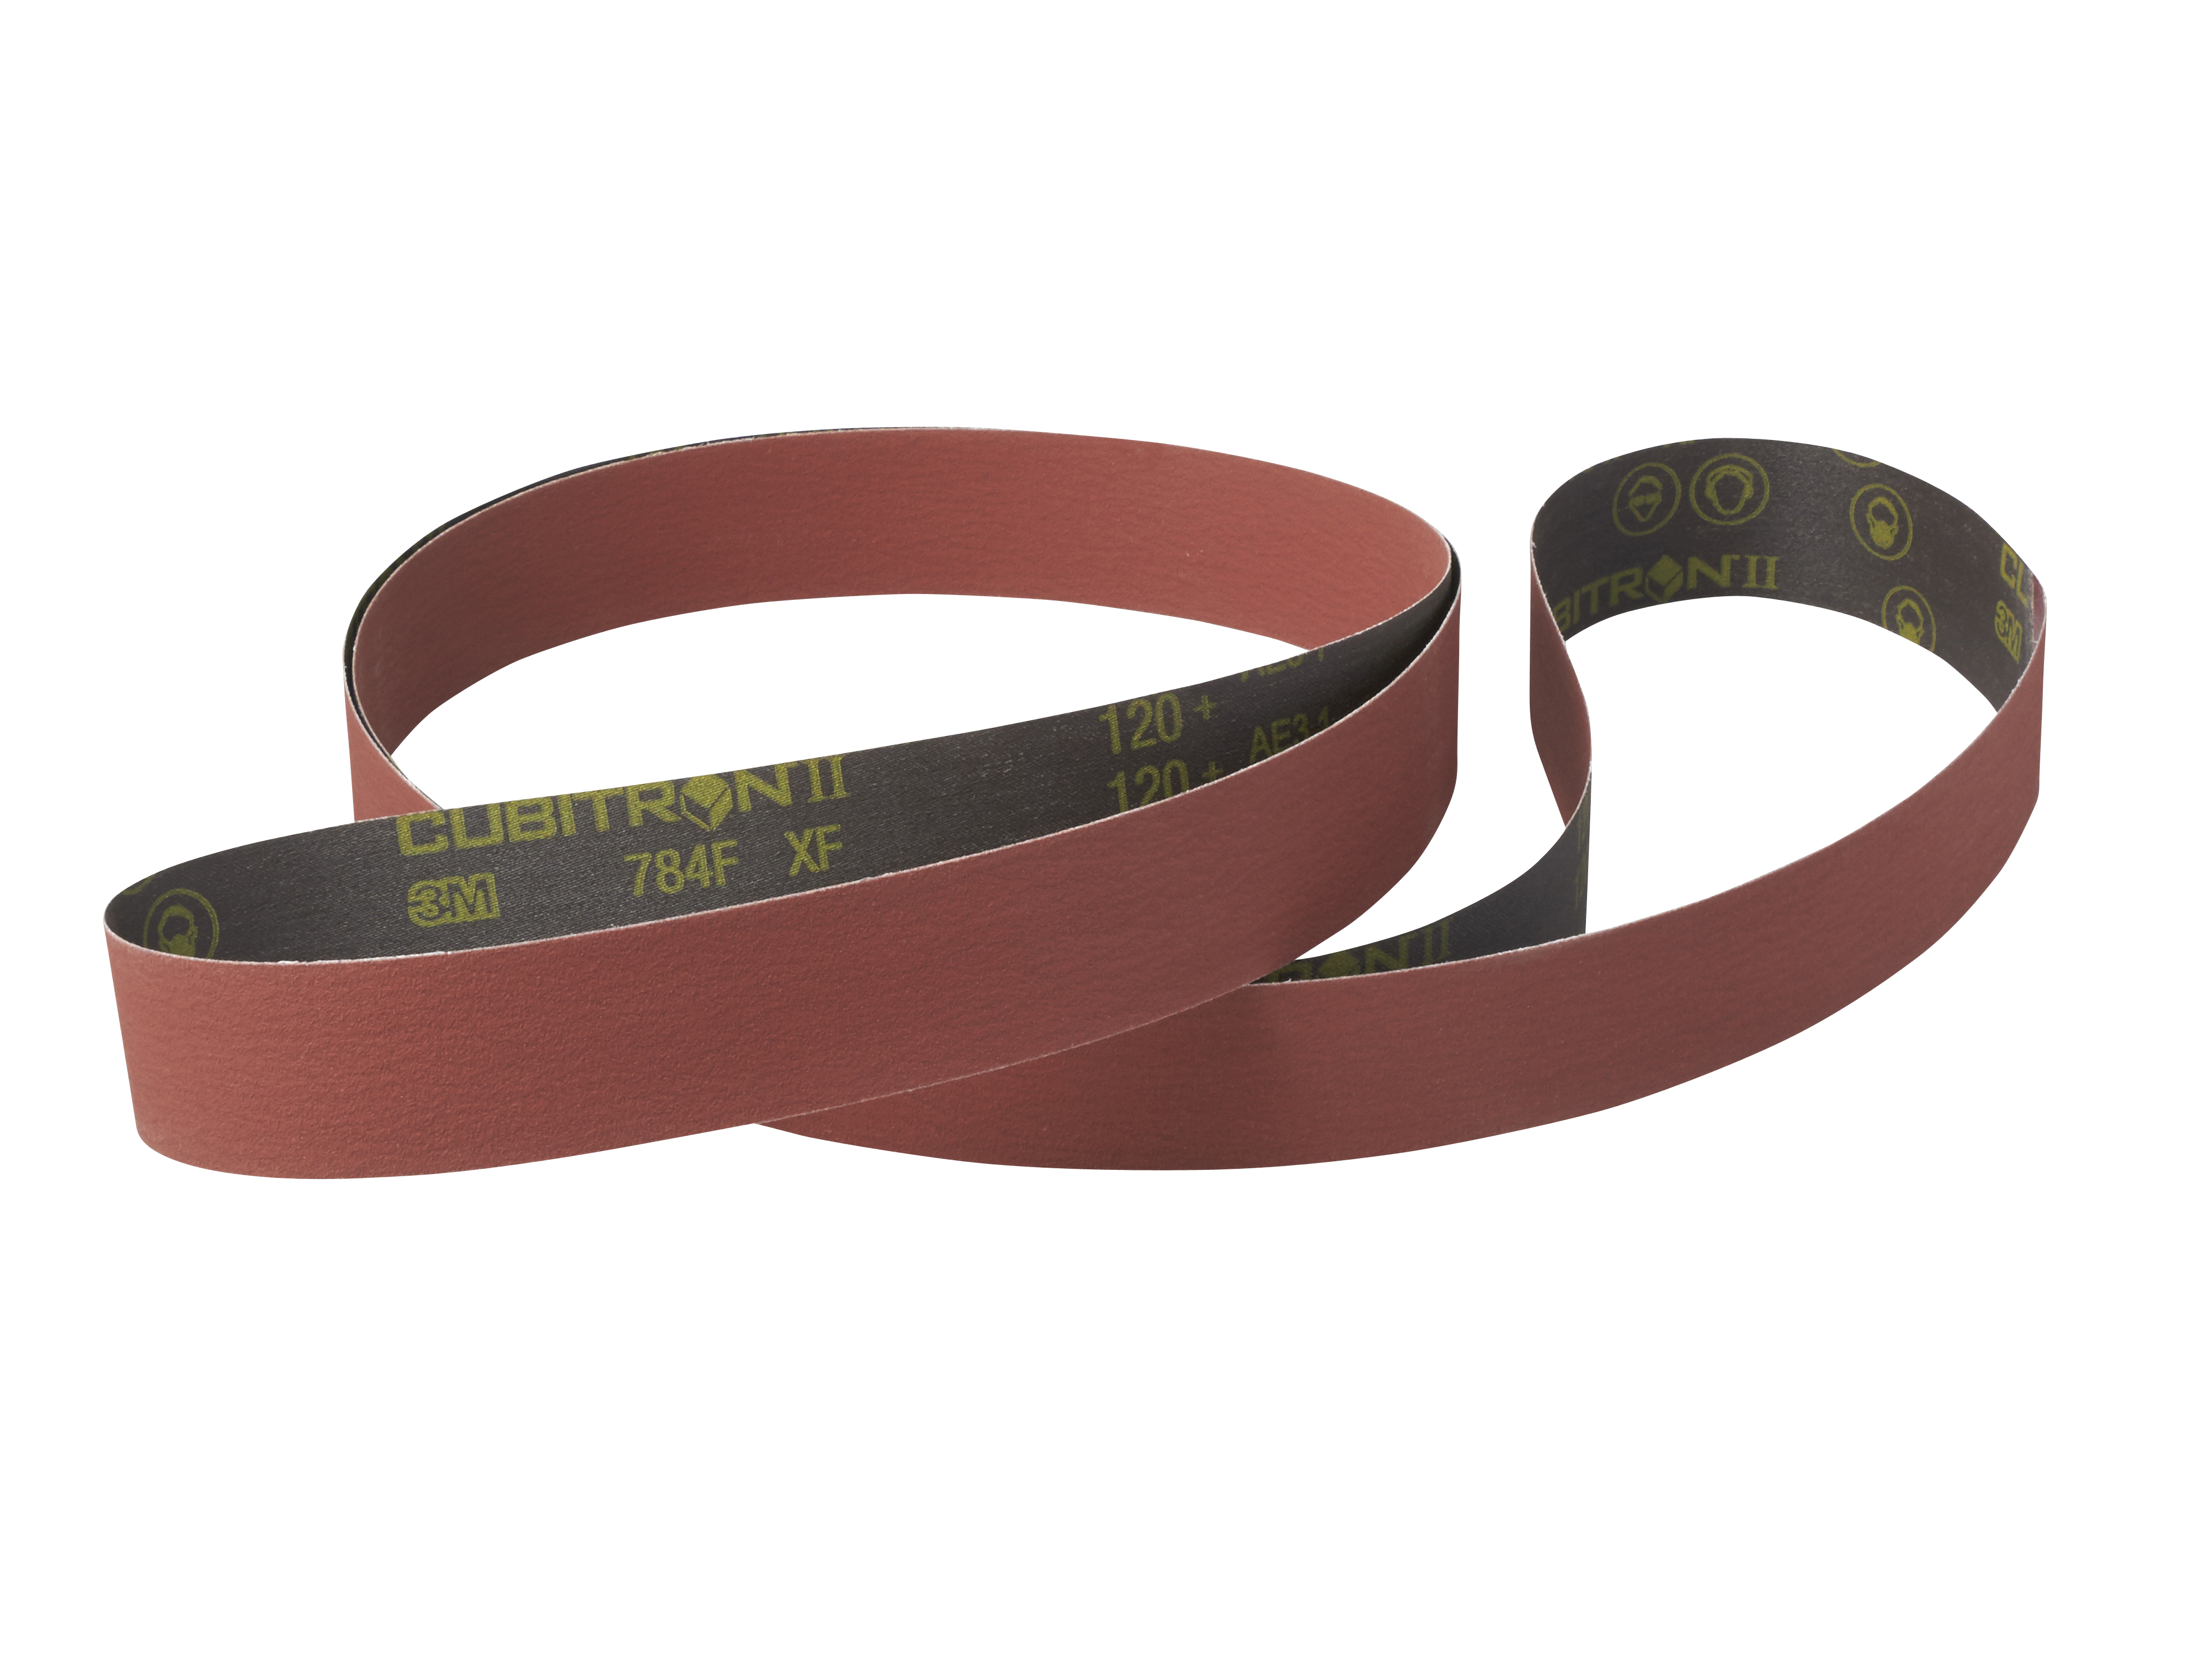 Filtrete U Vacuum Belt 2 3M Belts Per Pack Fits HP Series 